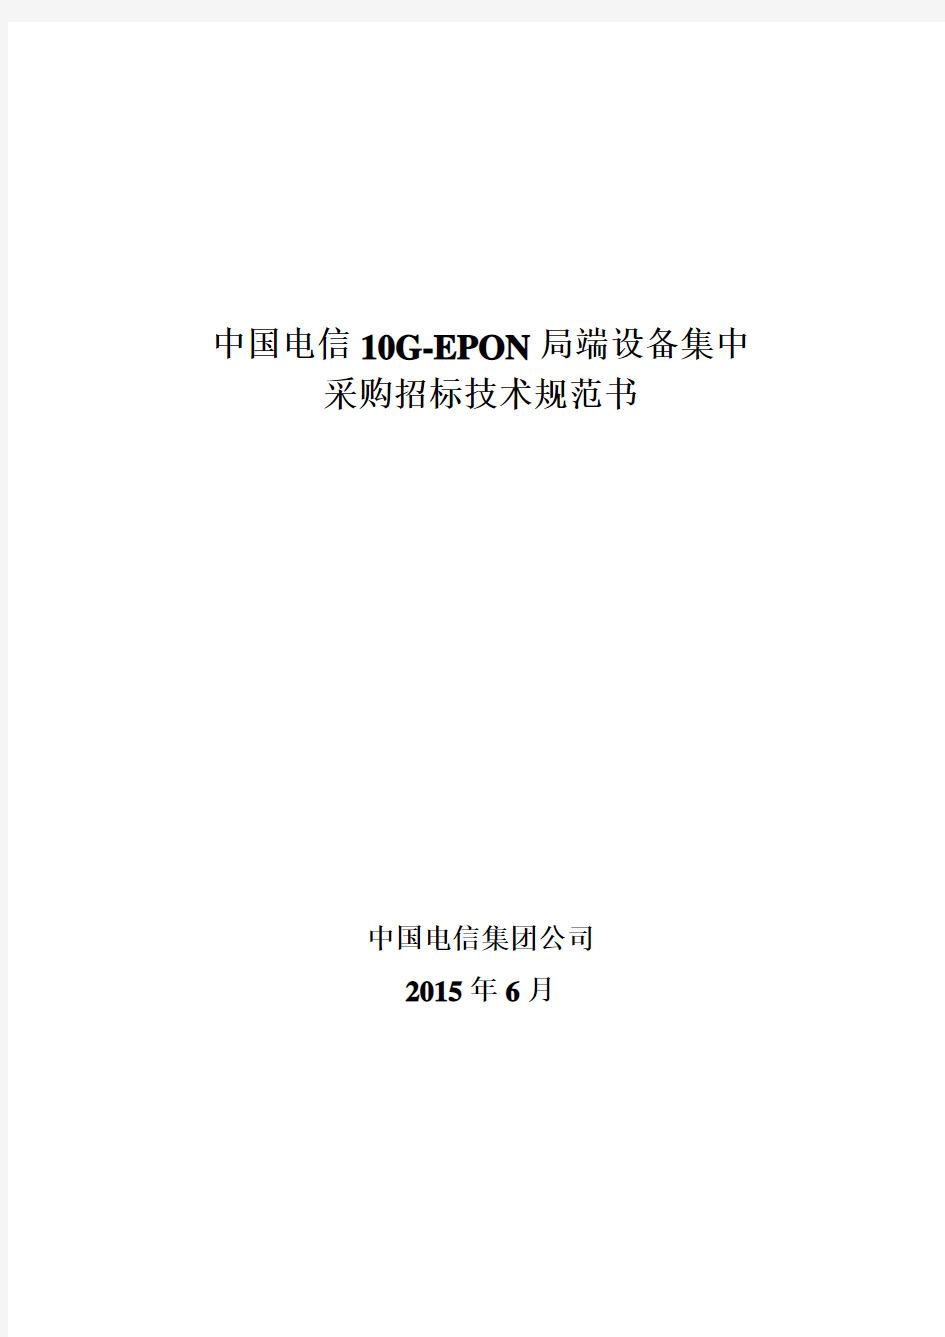 中国电信10G-EPON局端设备招标技术规范书